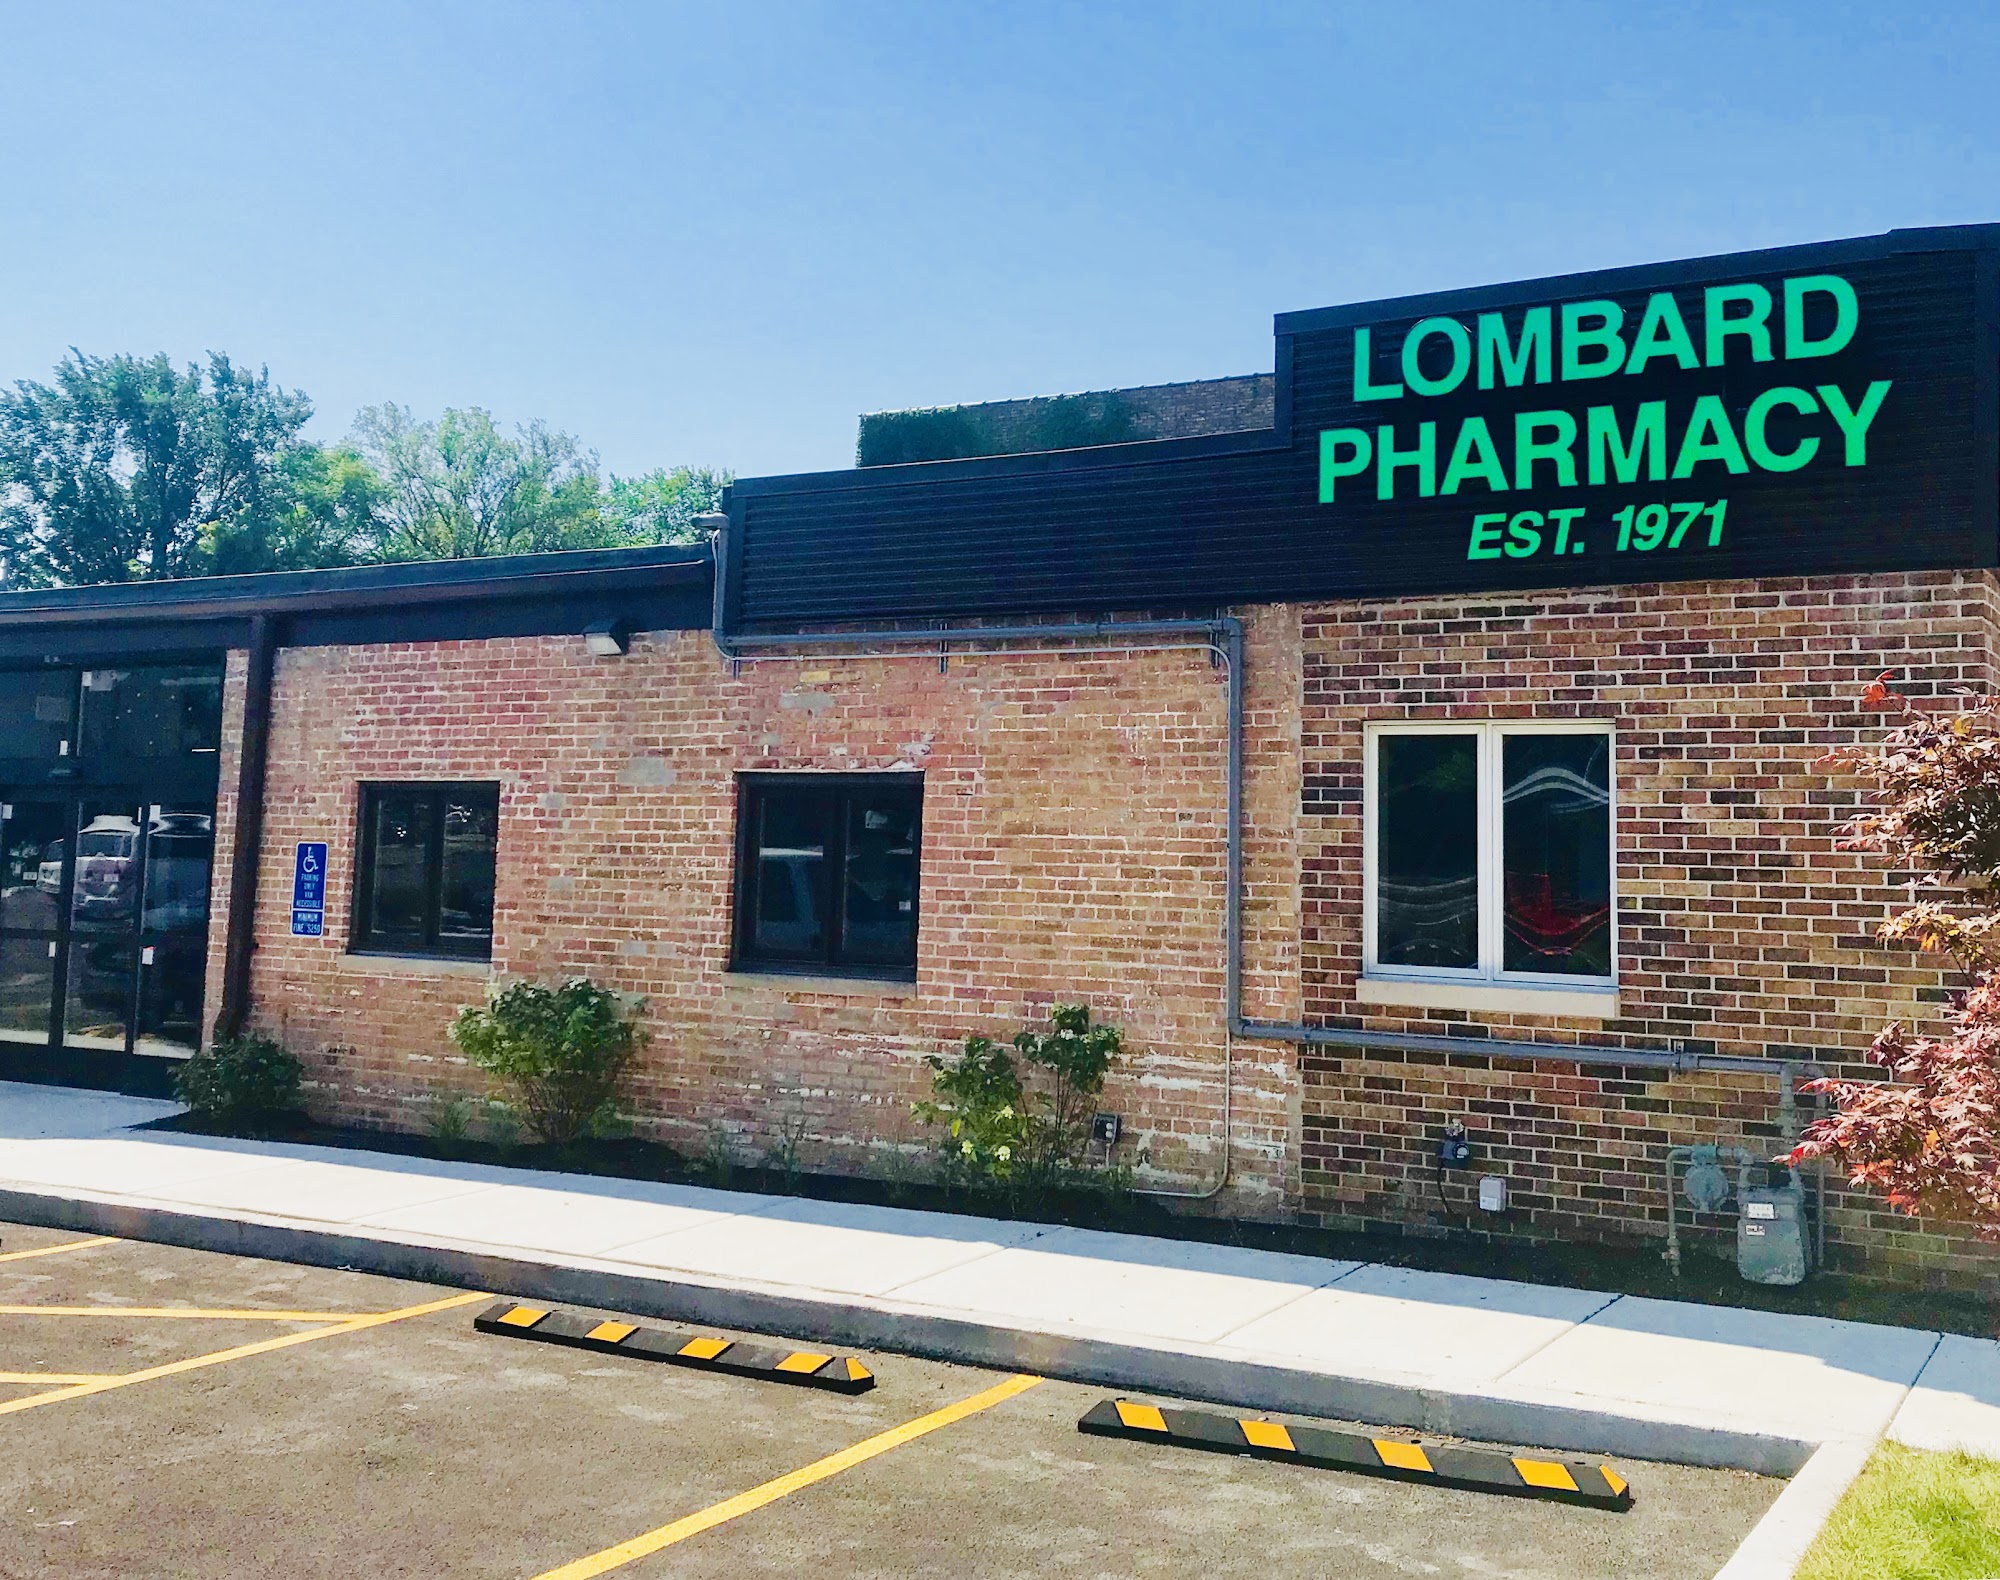 Lombard Pharmacy